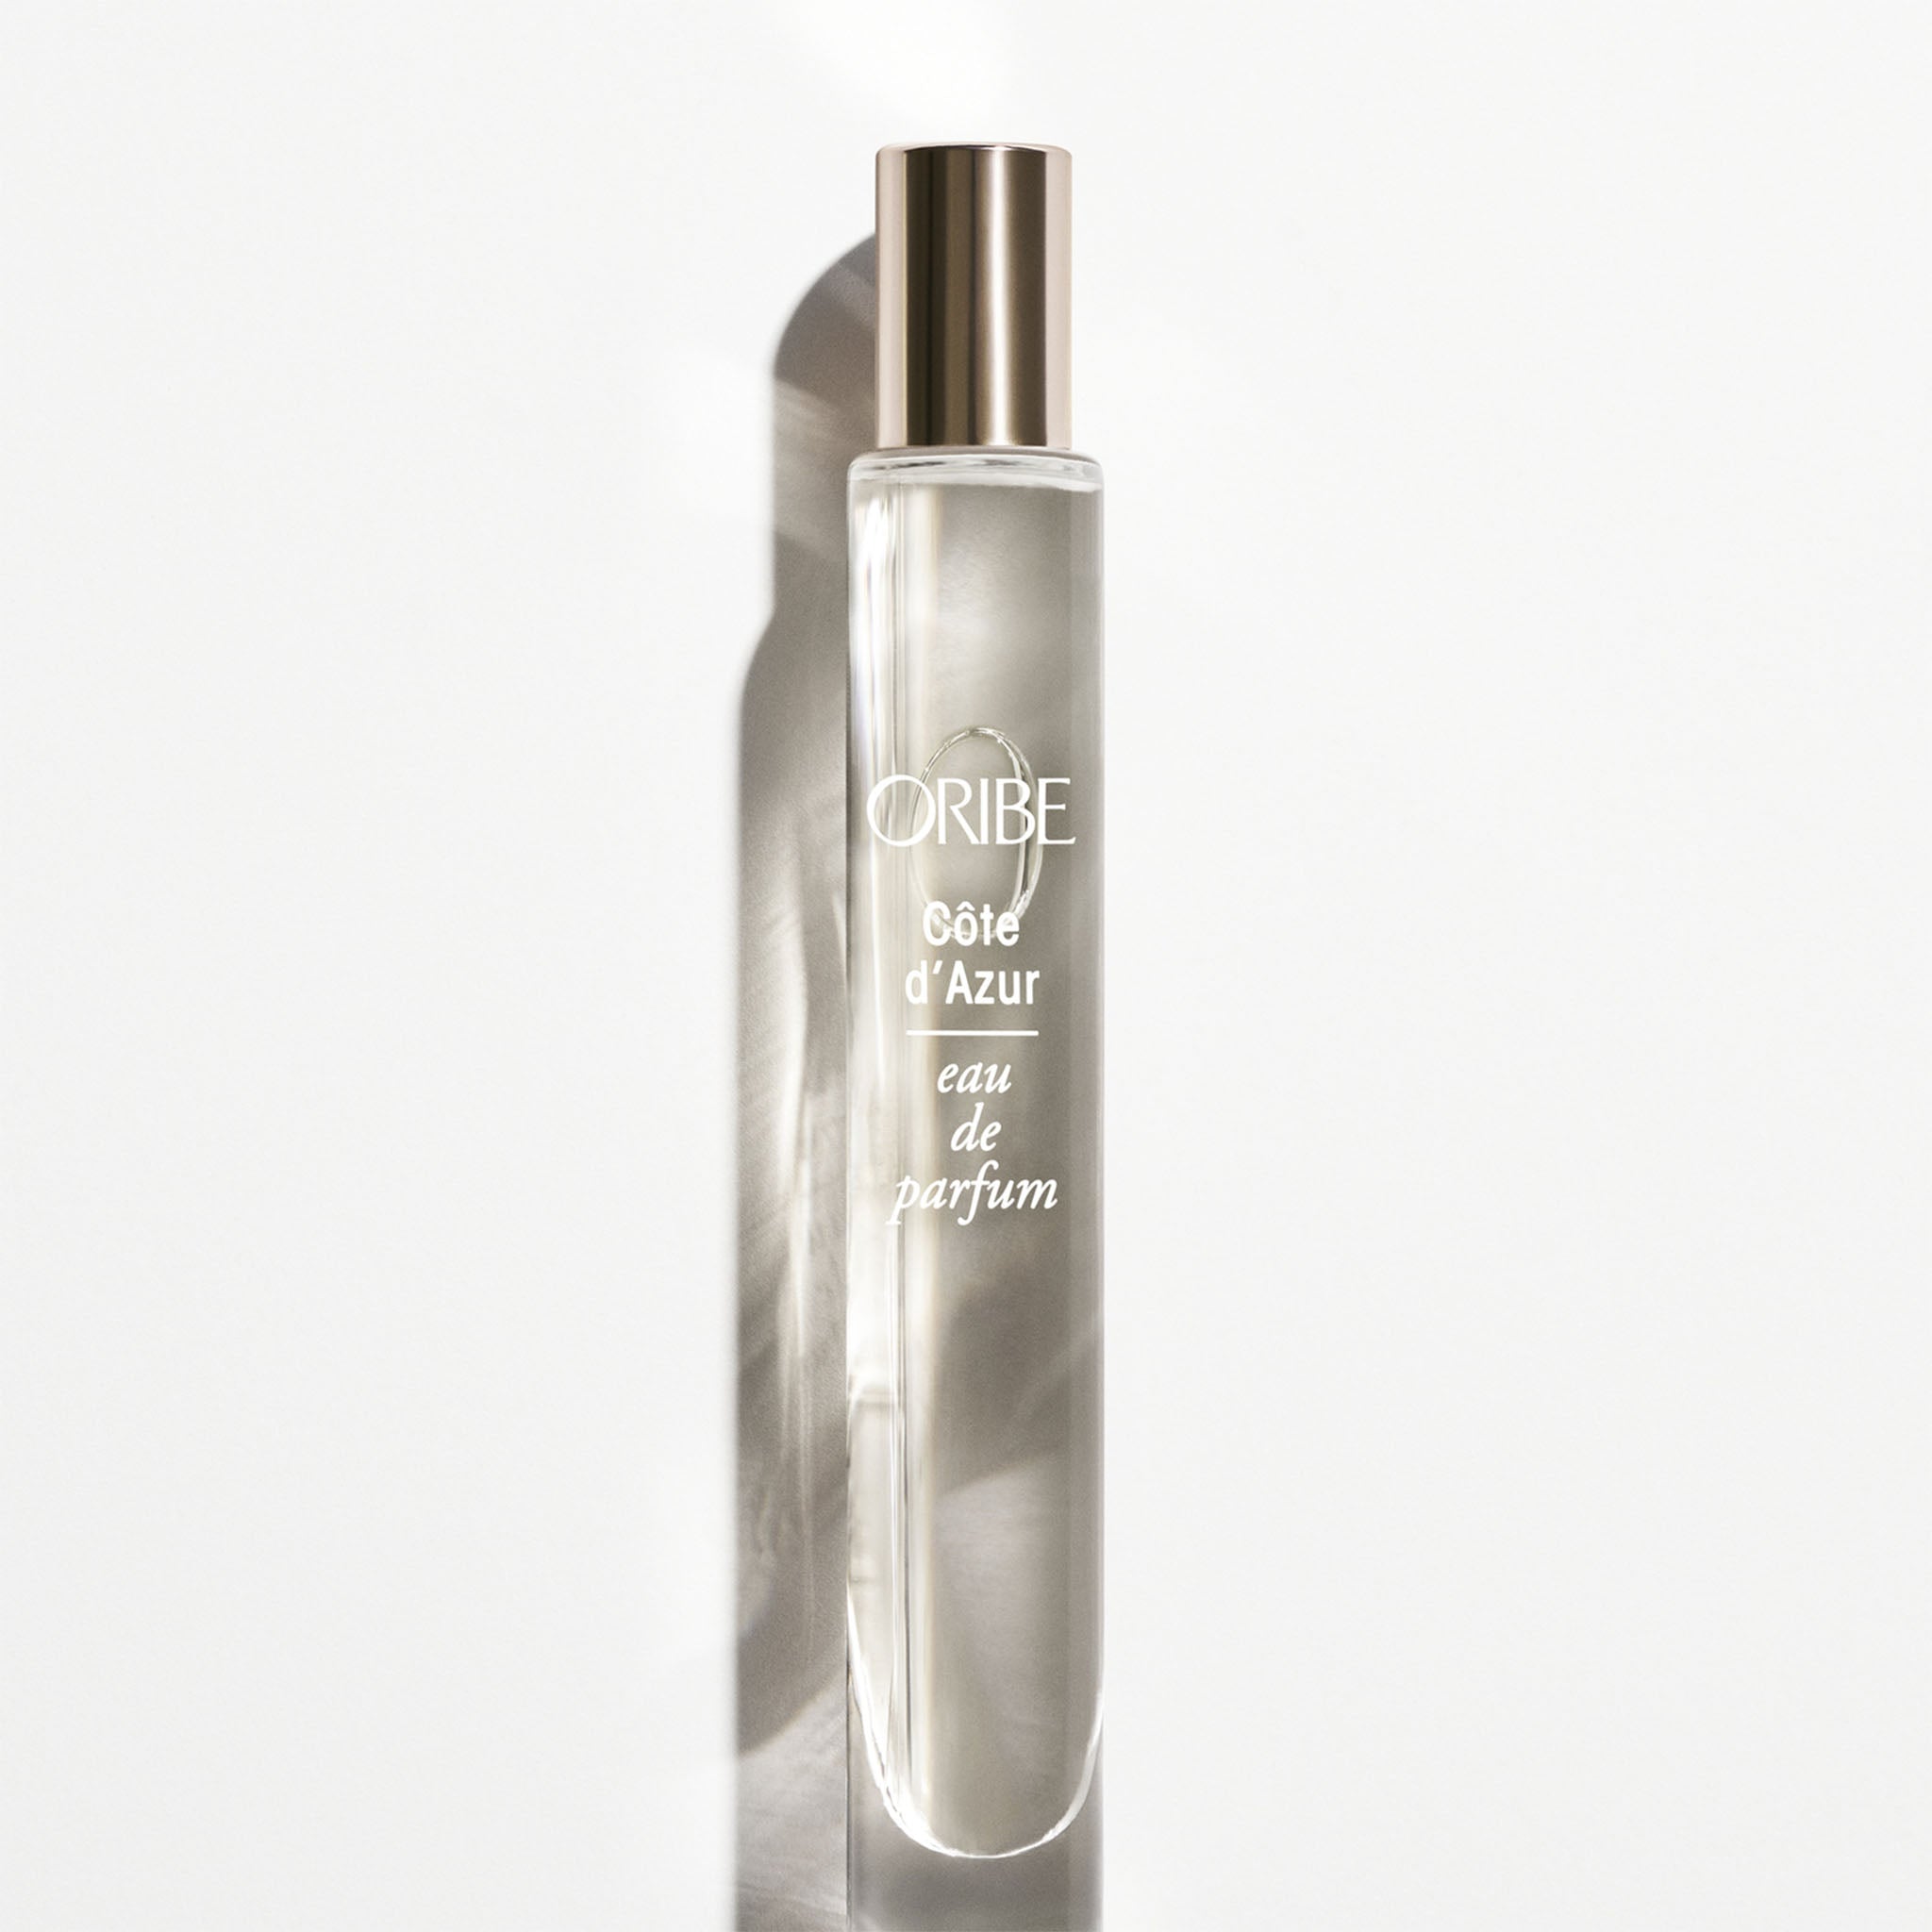 Oribe. Eau de Parfum Côte D'Azur - 10 ml - Concept C. Shop